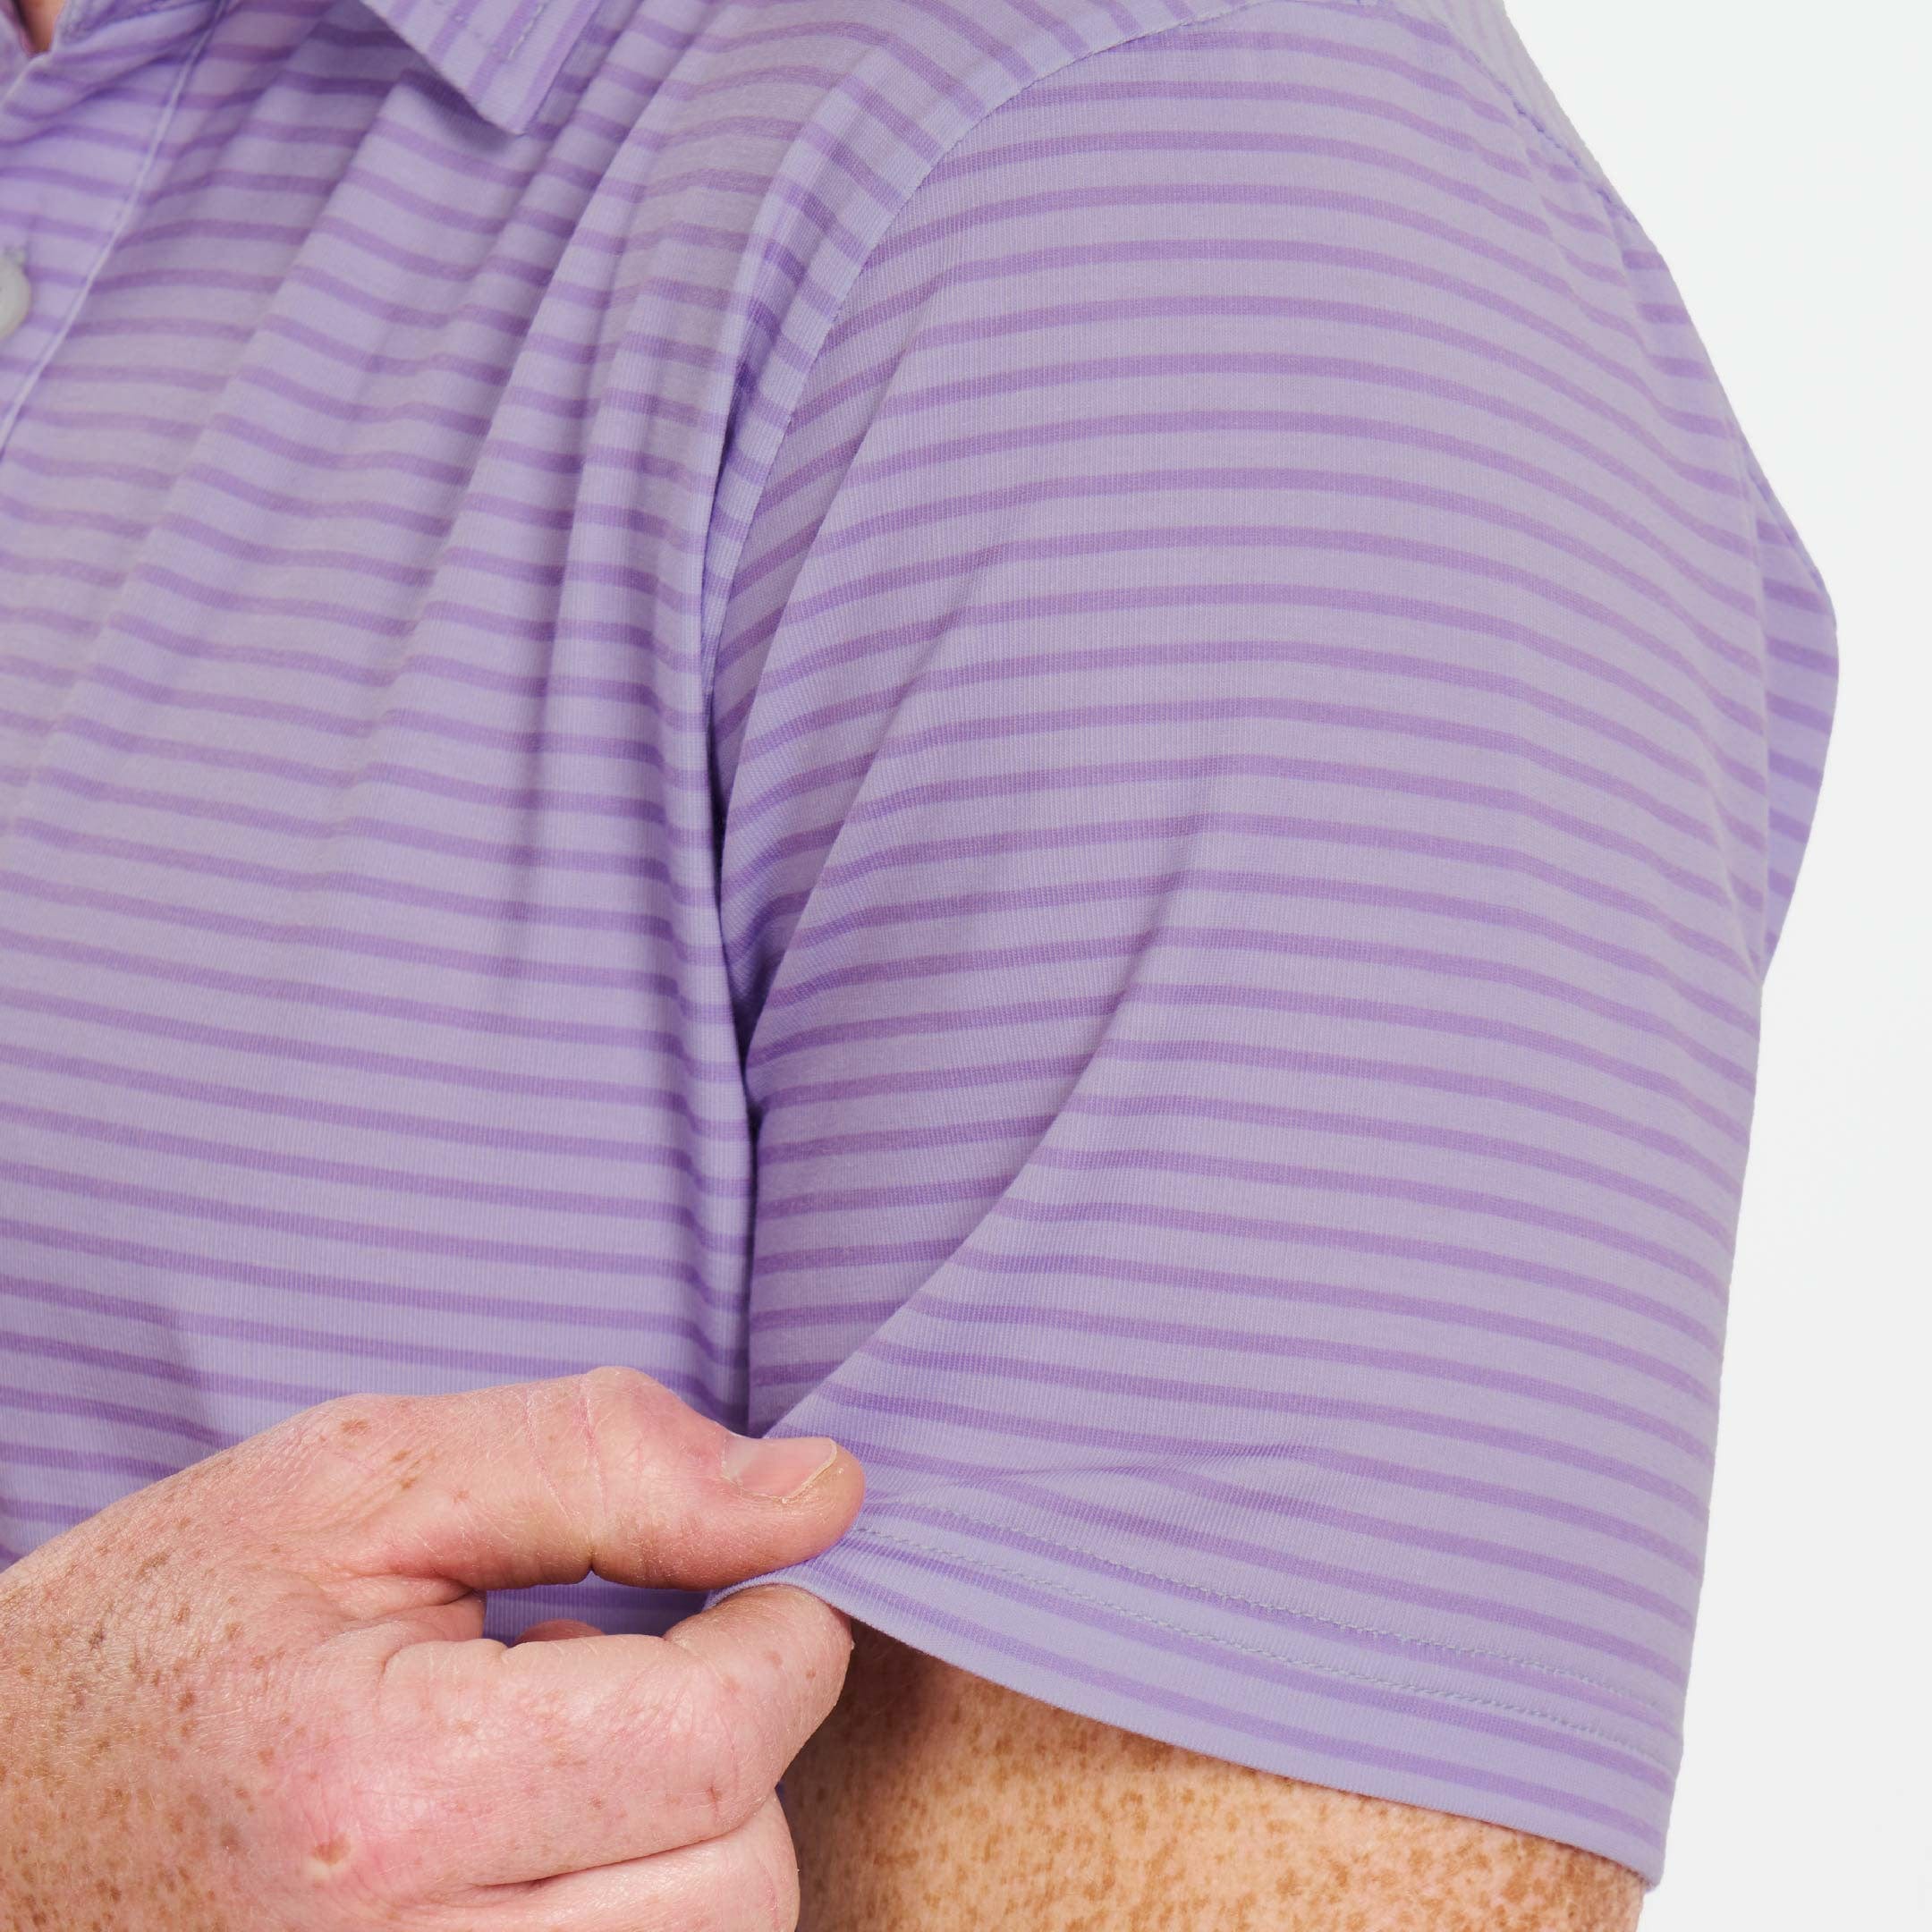 Ash & Erie Concord Stripes Tech Polo Shirt for Short Men   Tech Polo Shirt